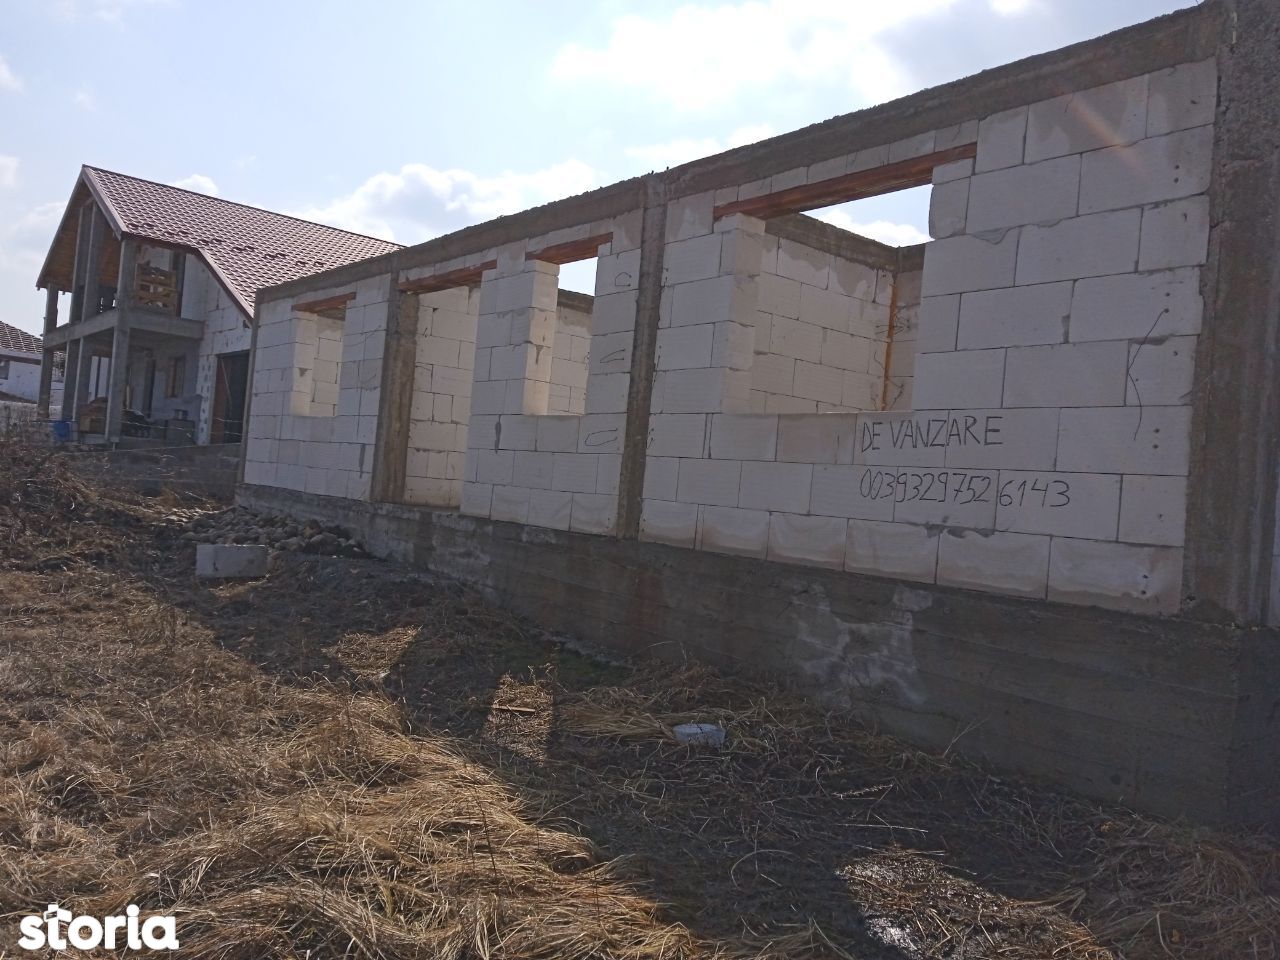 Ofer spre vânzare casă în construcție în comuna Chinteni jud Cluj